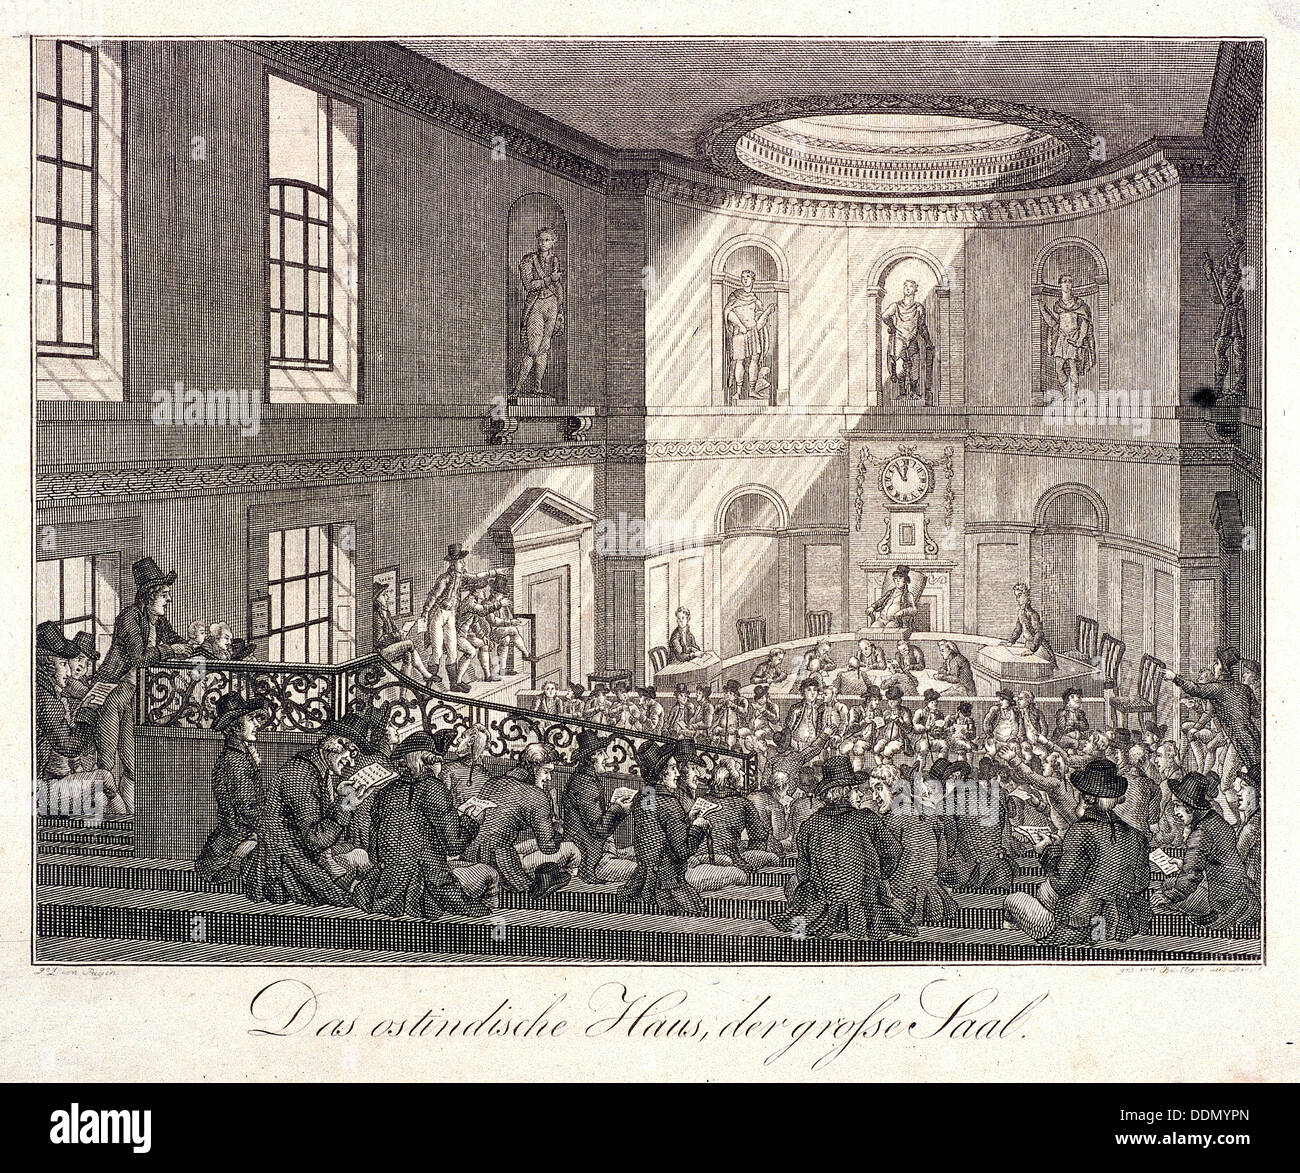 East India House, London, 1808. Artist: Boettger Stock Photo